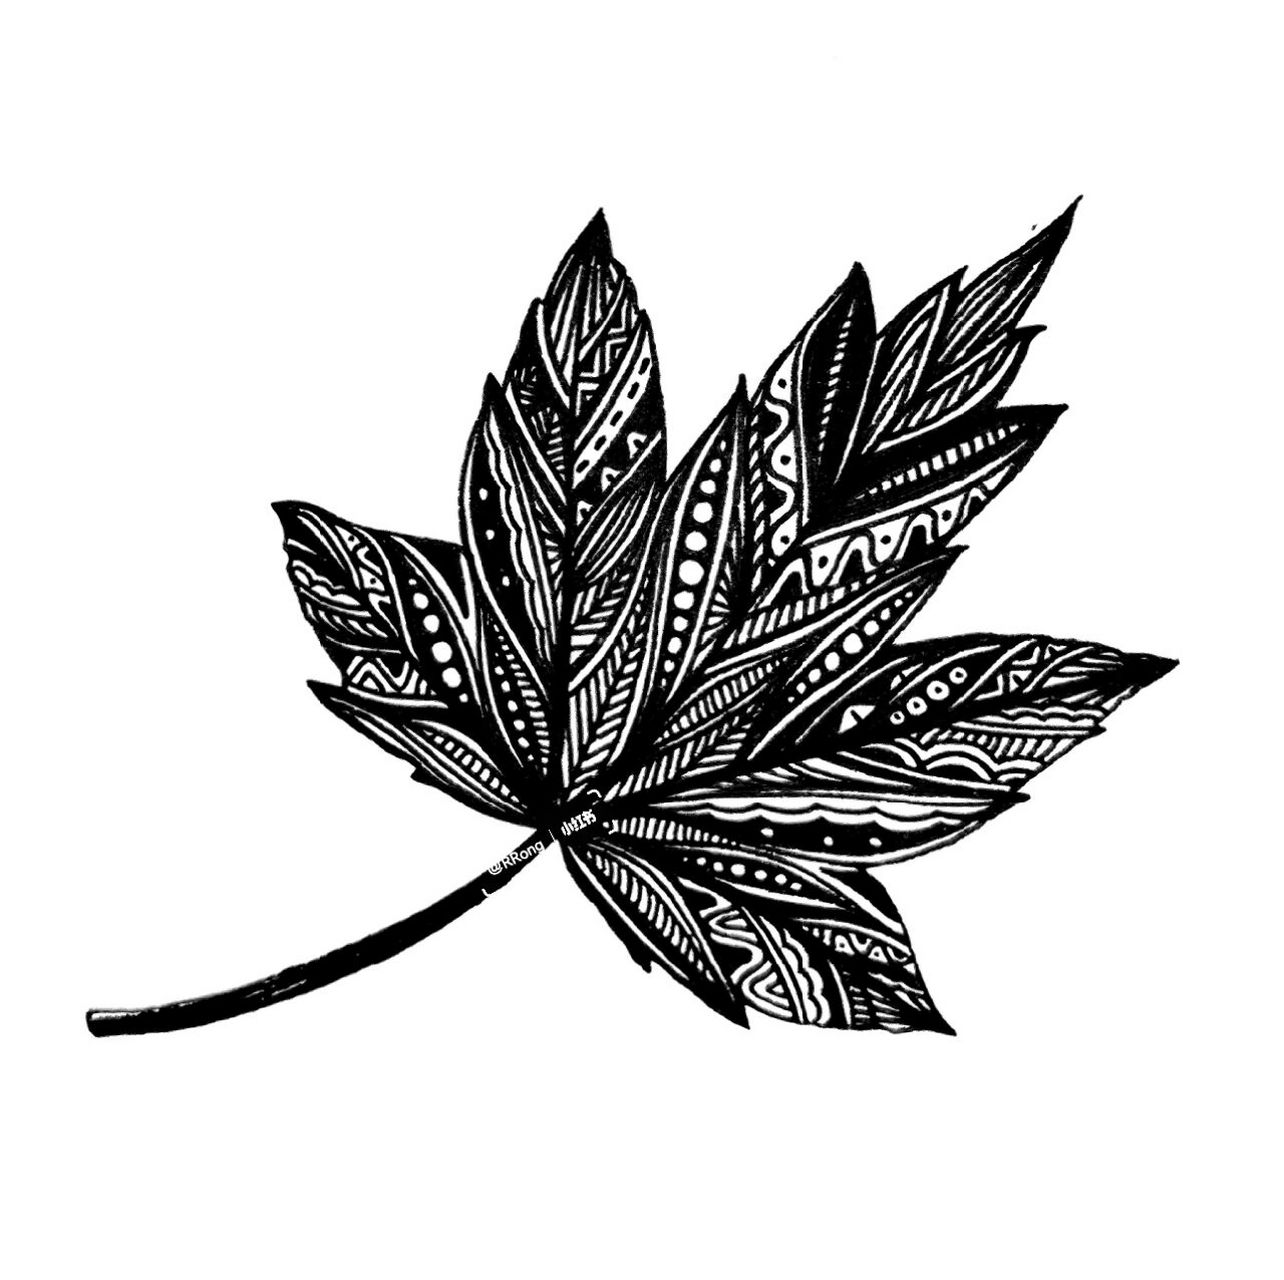 树叶线描画黑白图片